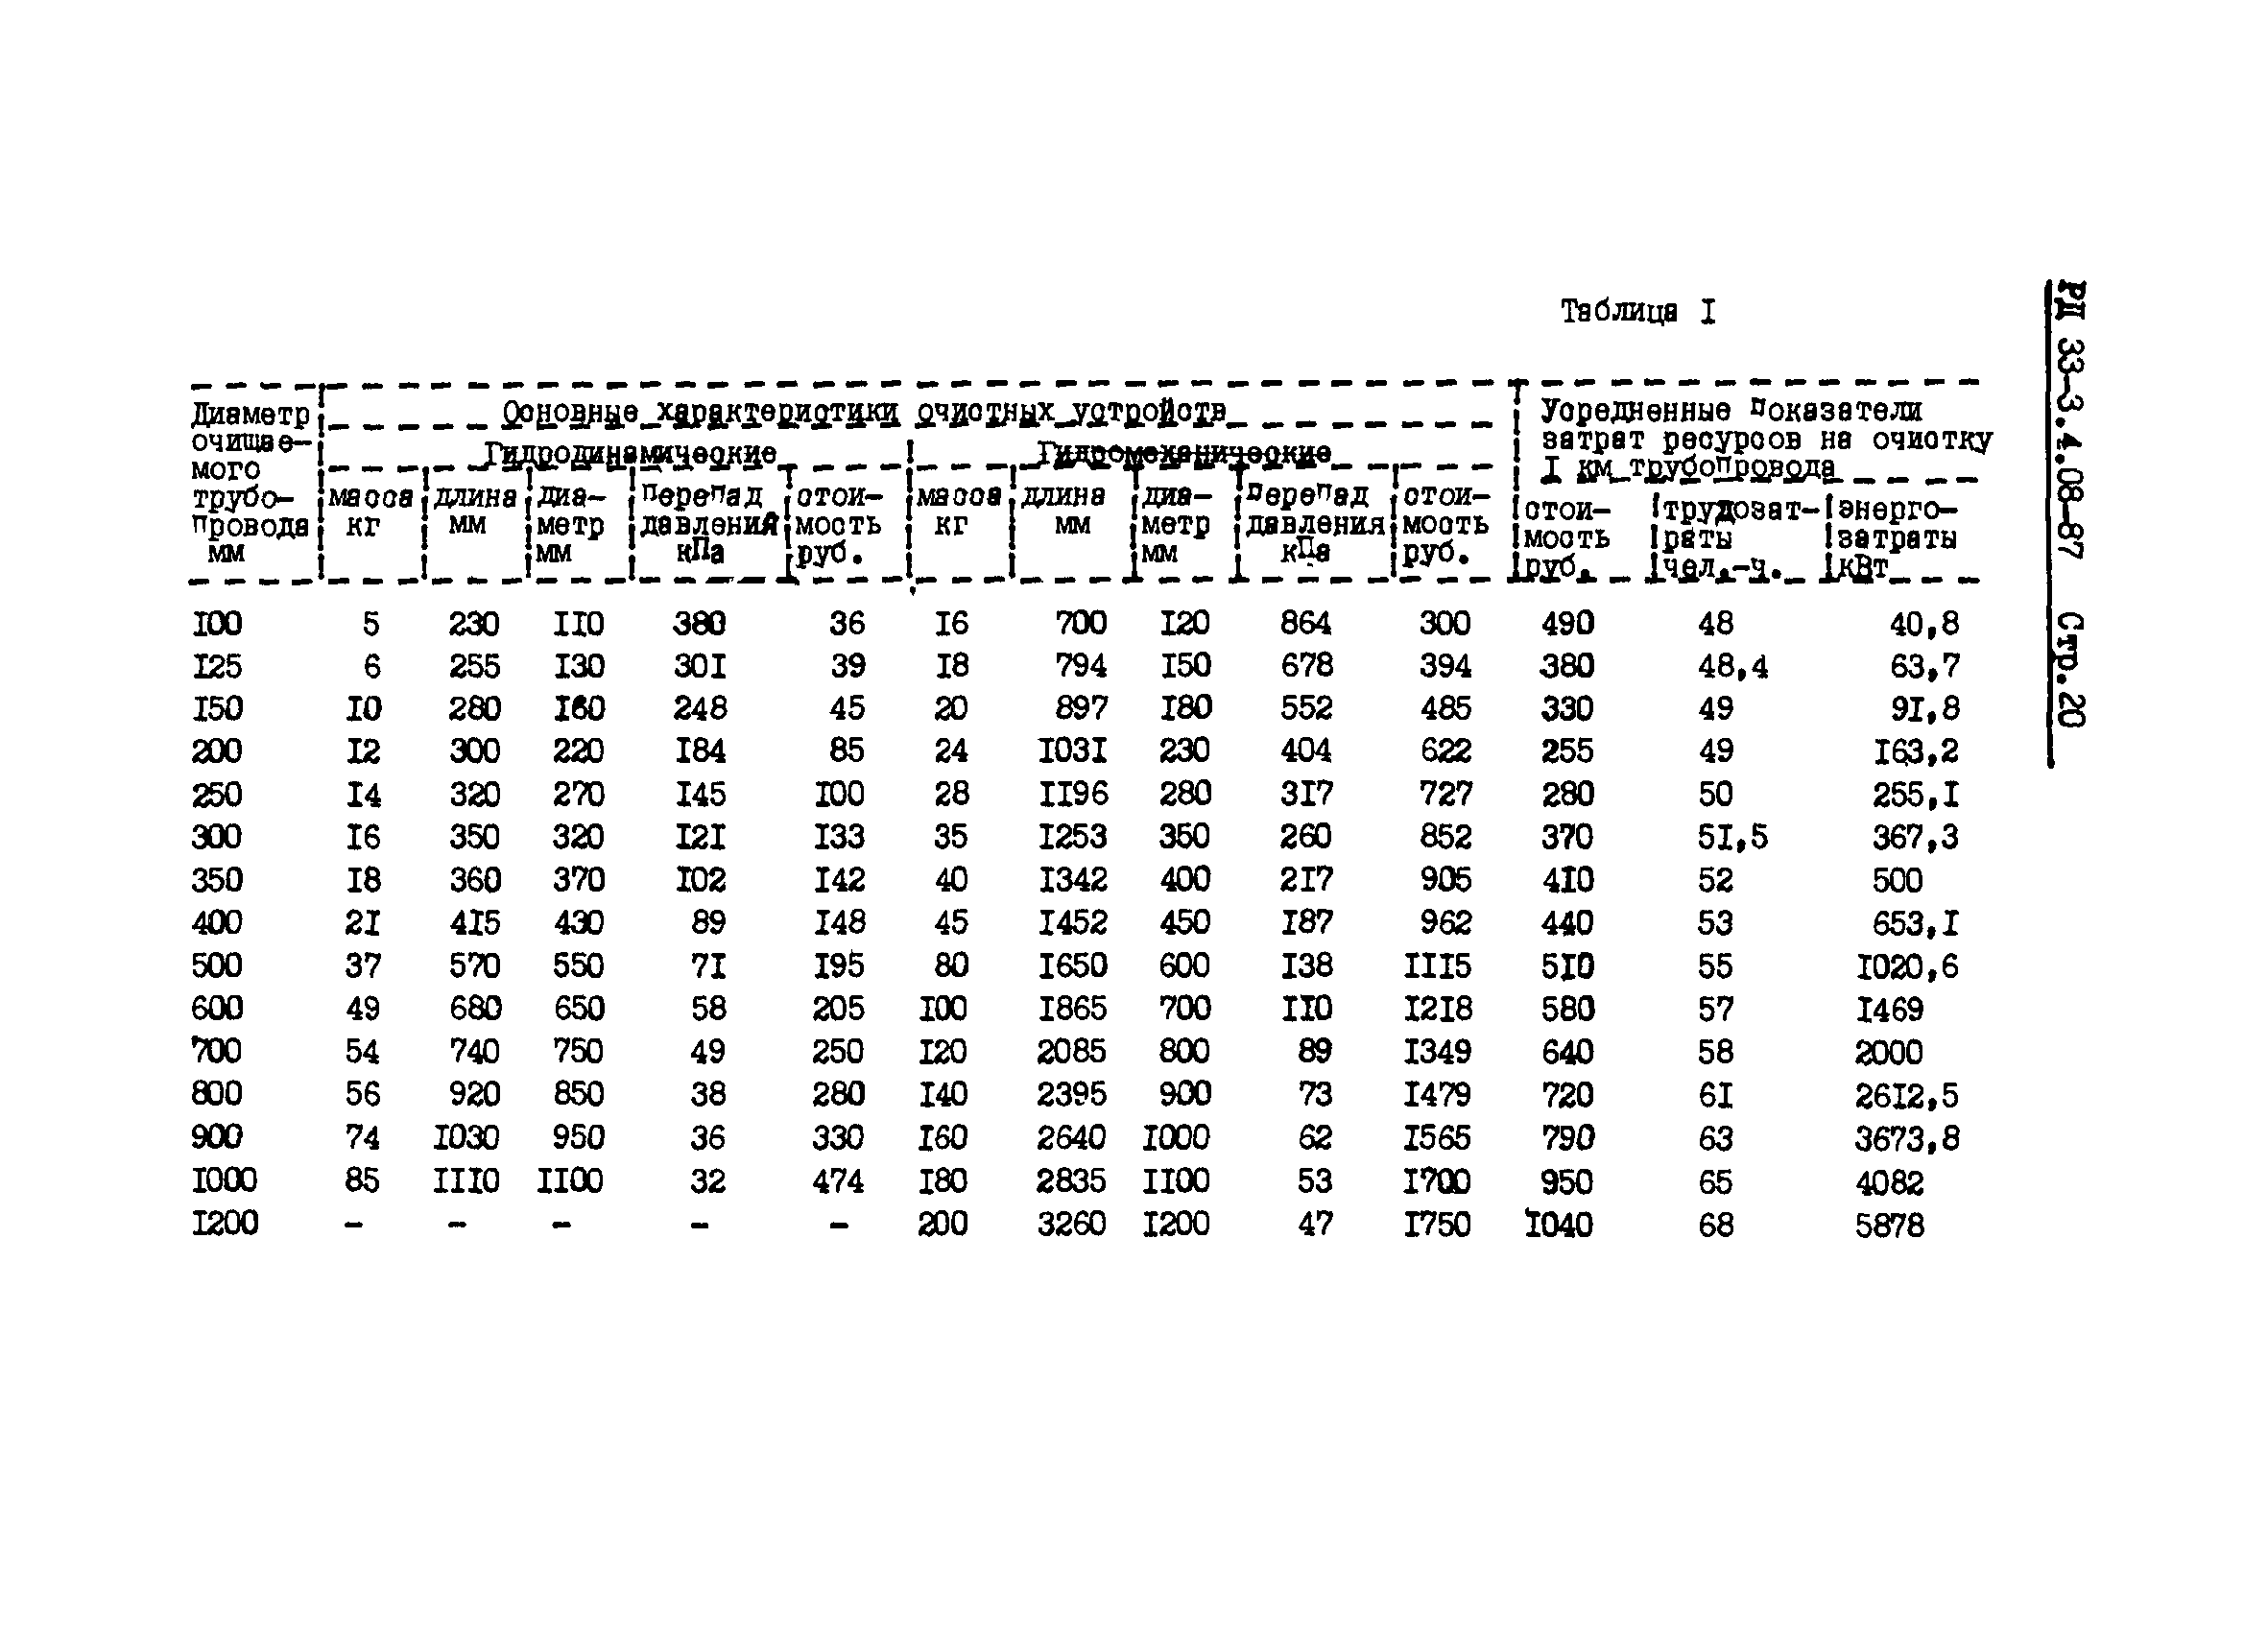 РД 33-3.4.08-87